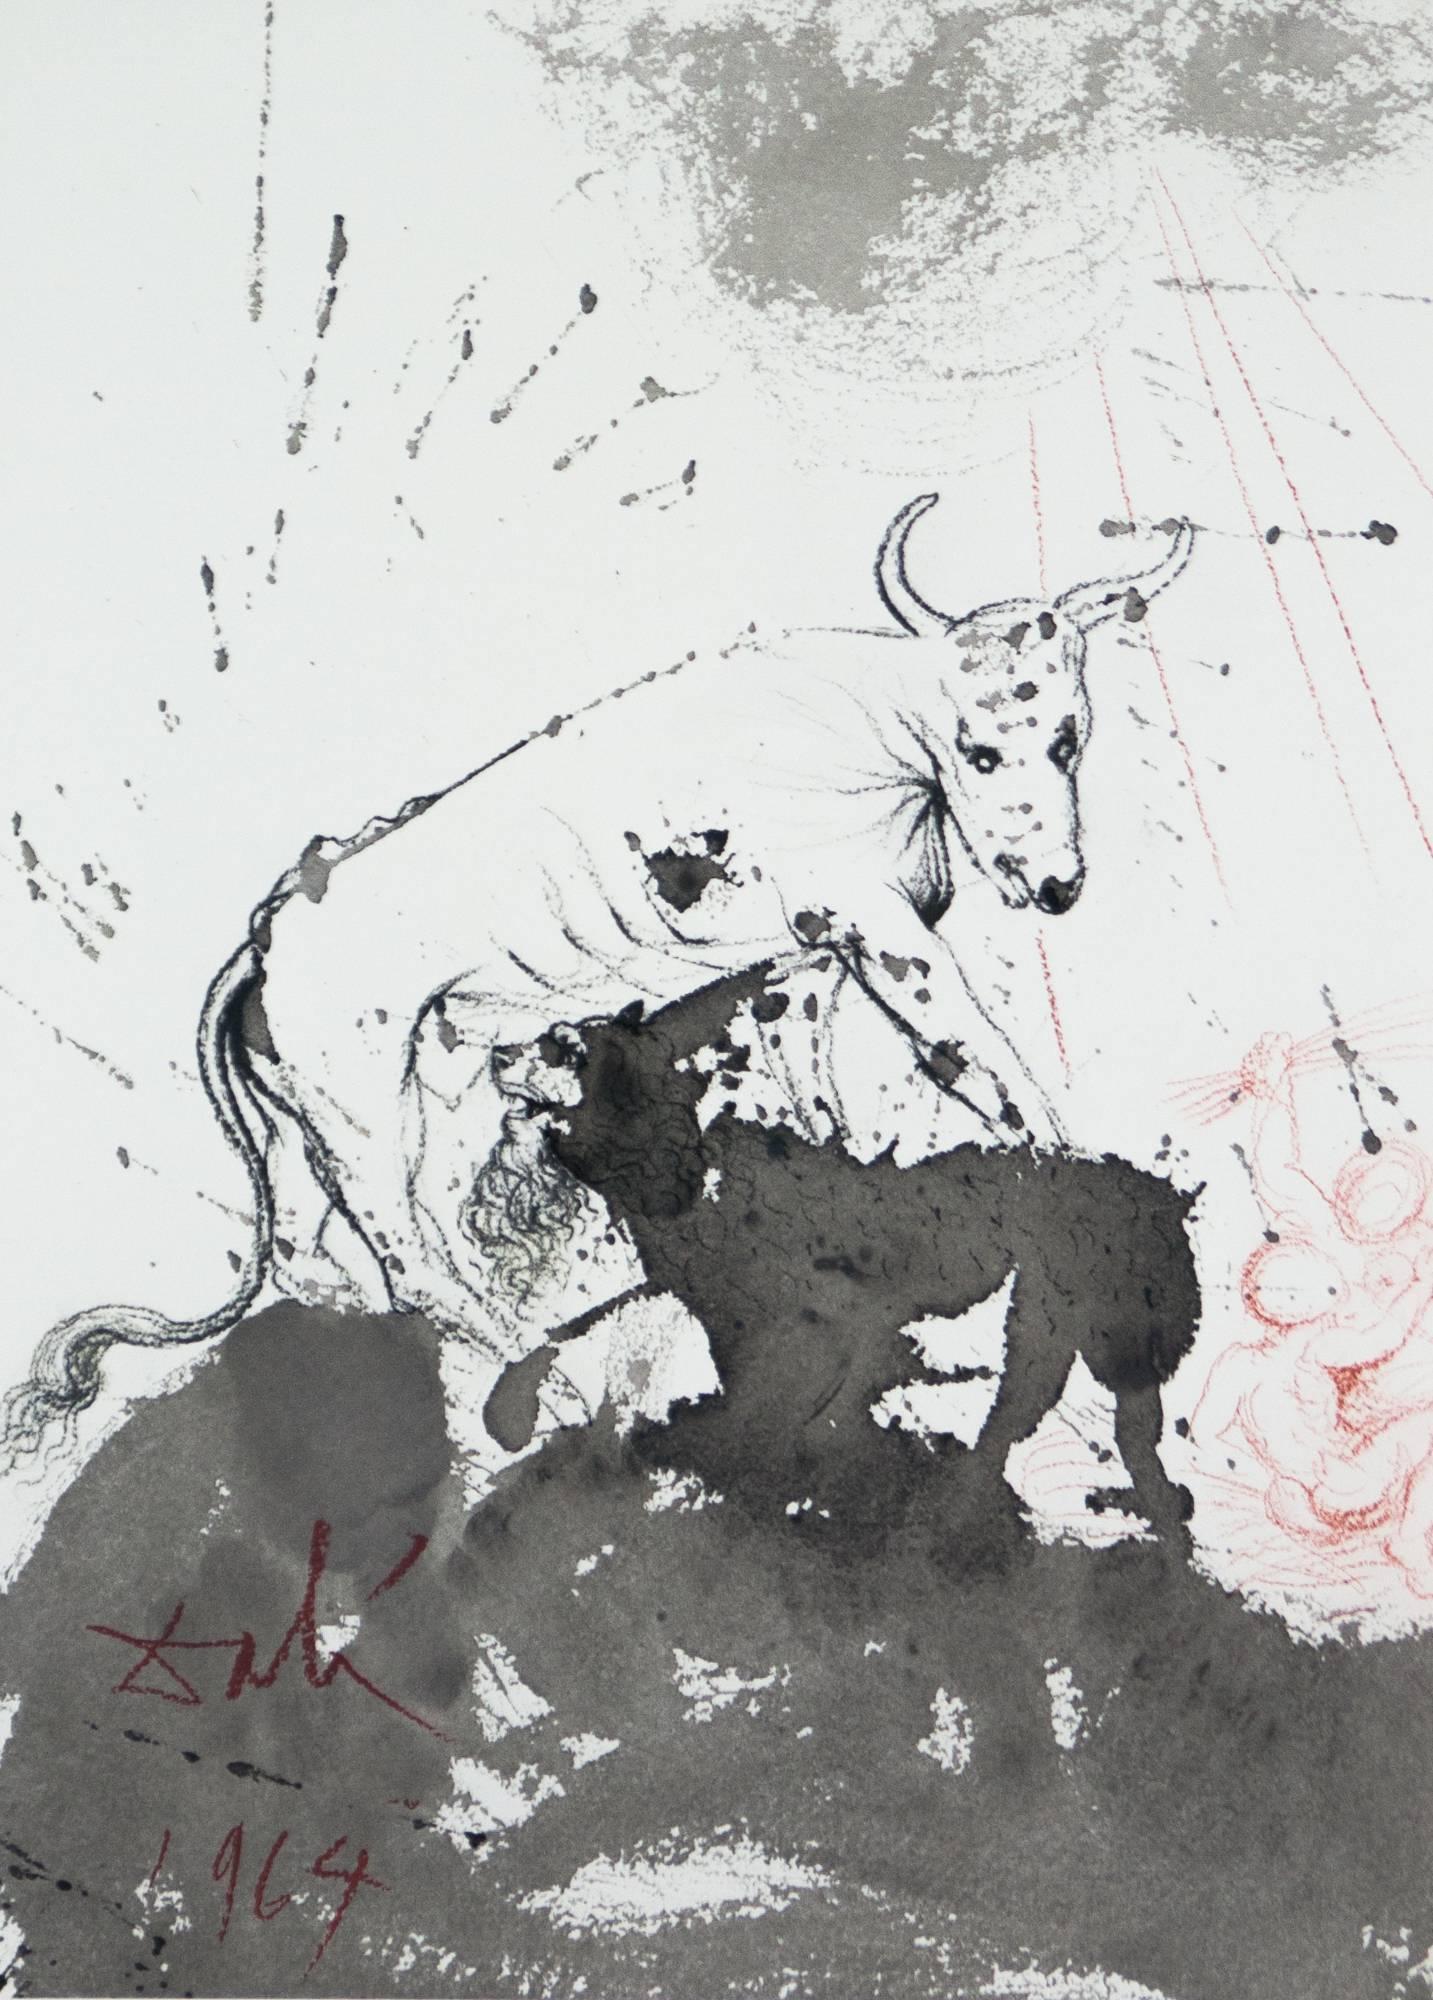 Salvador Dalí Abstract Print – The Lion Eating Straw Like The Ox Biblia Sacra Salvador Dali Lithographie